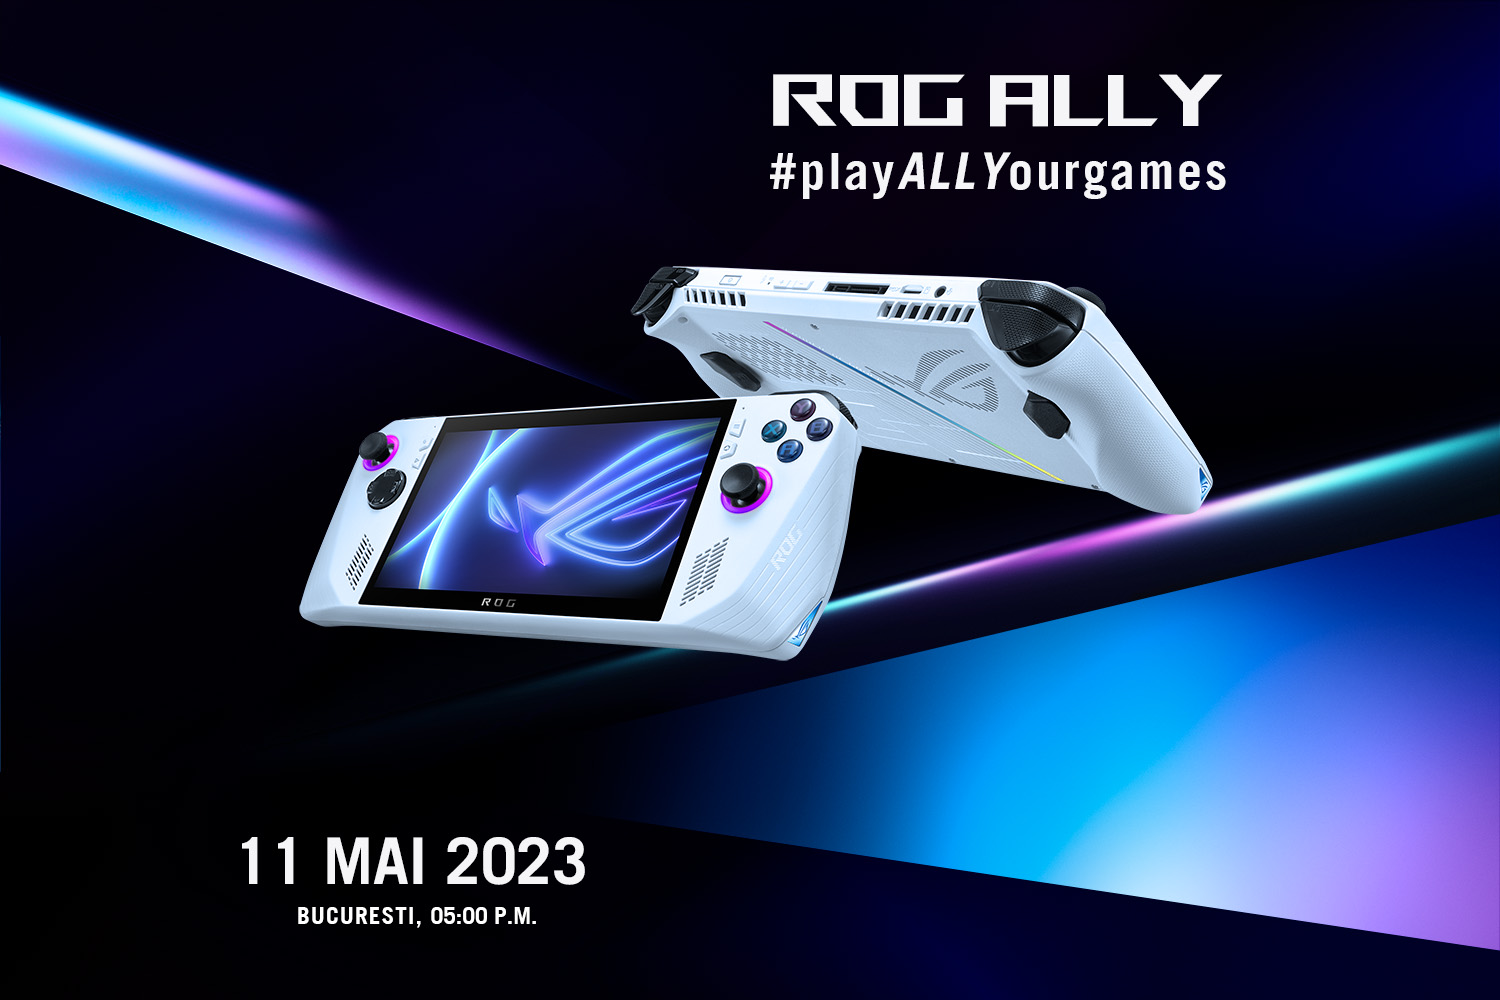 ROG anunță primul său dispozitiv portabil de gaming cu Windows 11 – ROG Ally